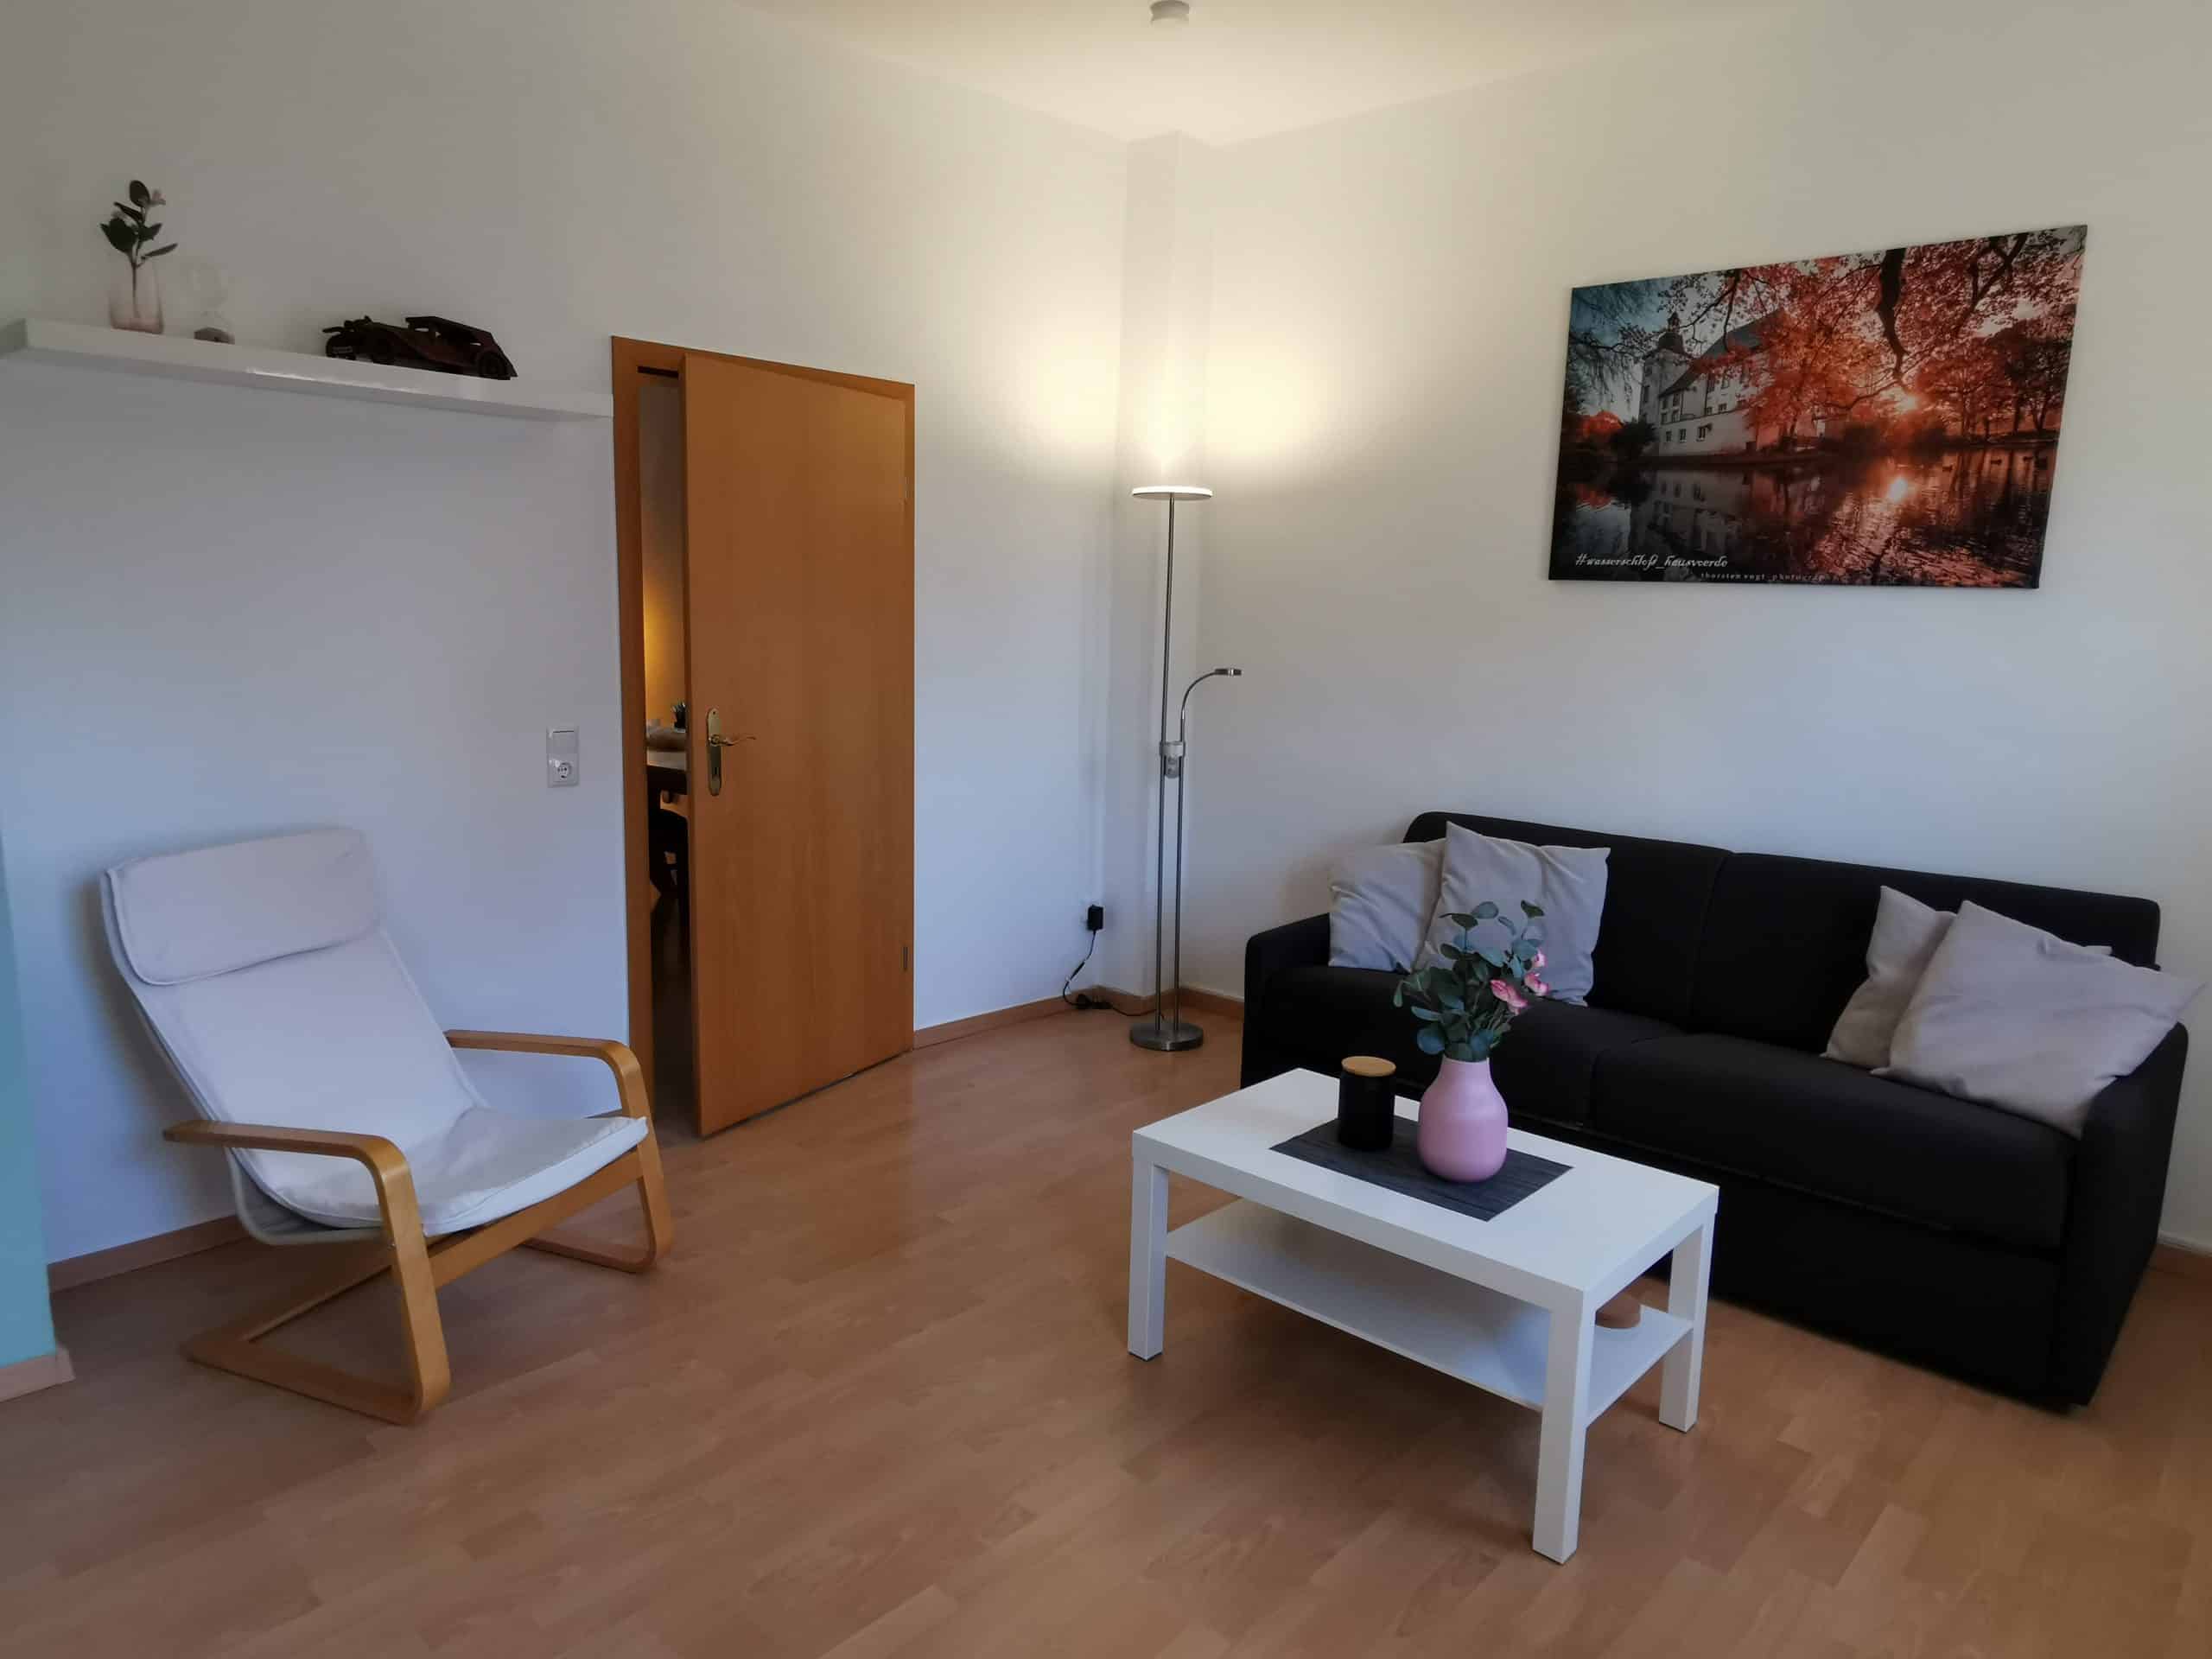 Das Bild zeigt das Wohnzimmer der Gästewohnung am Mommbach